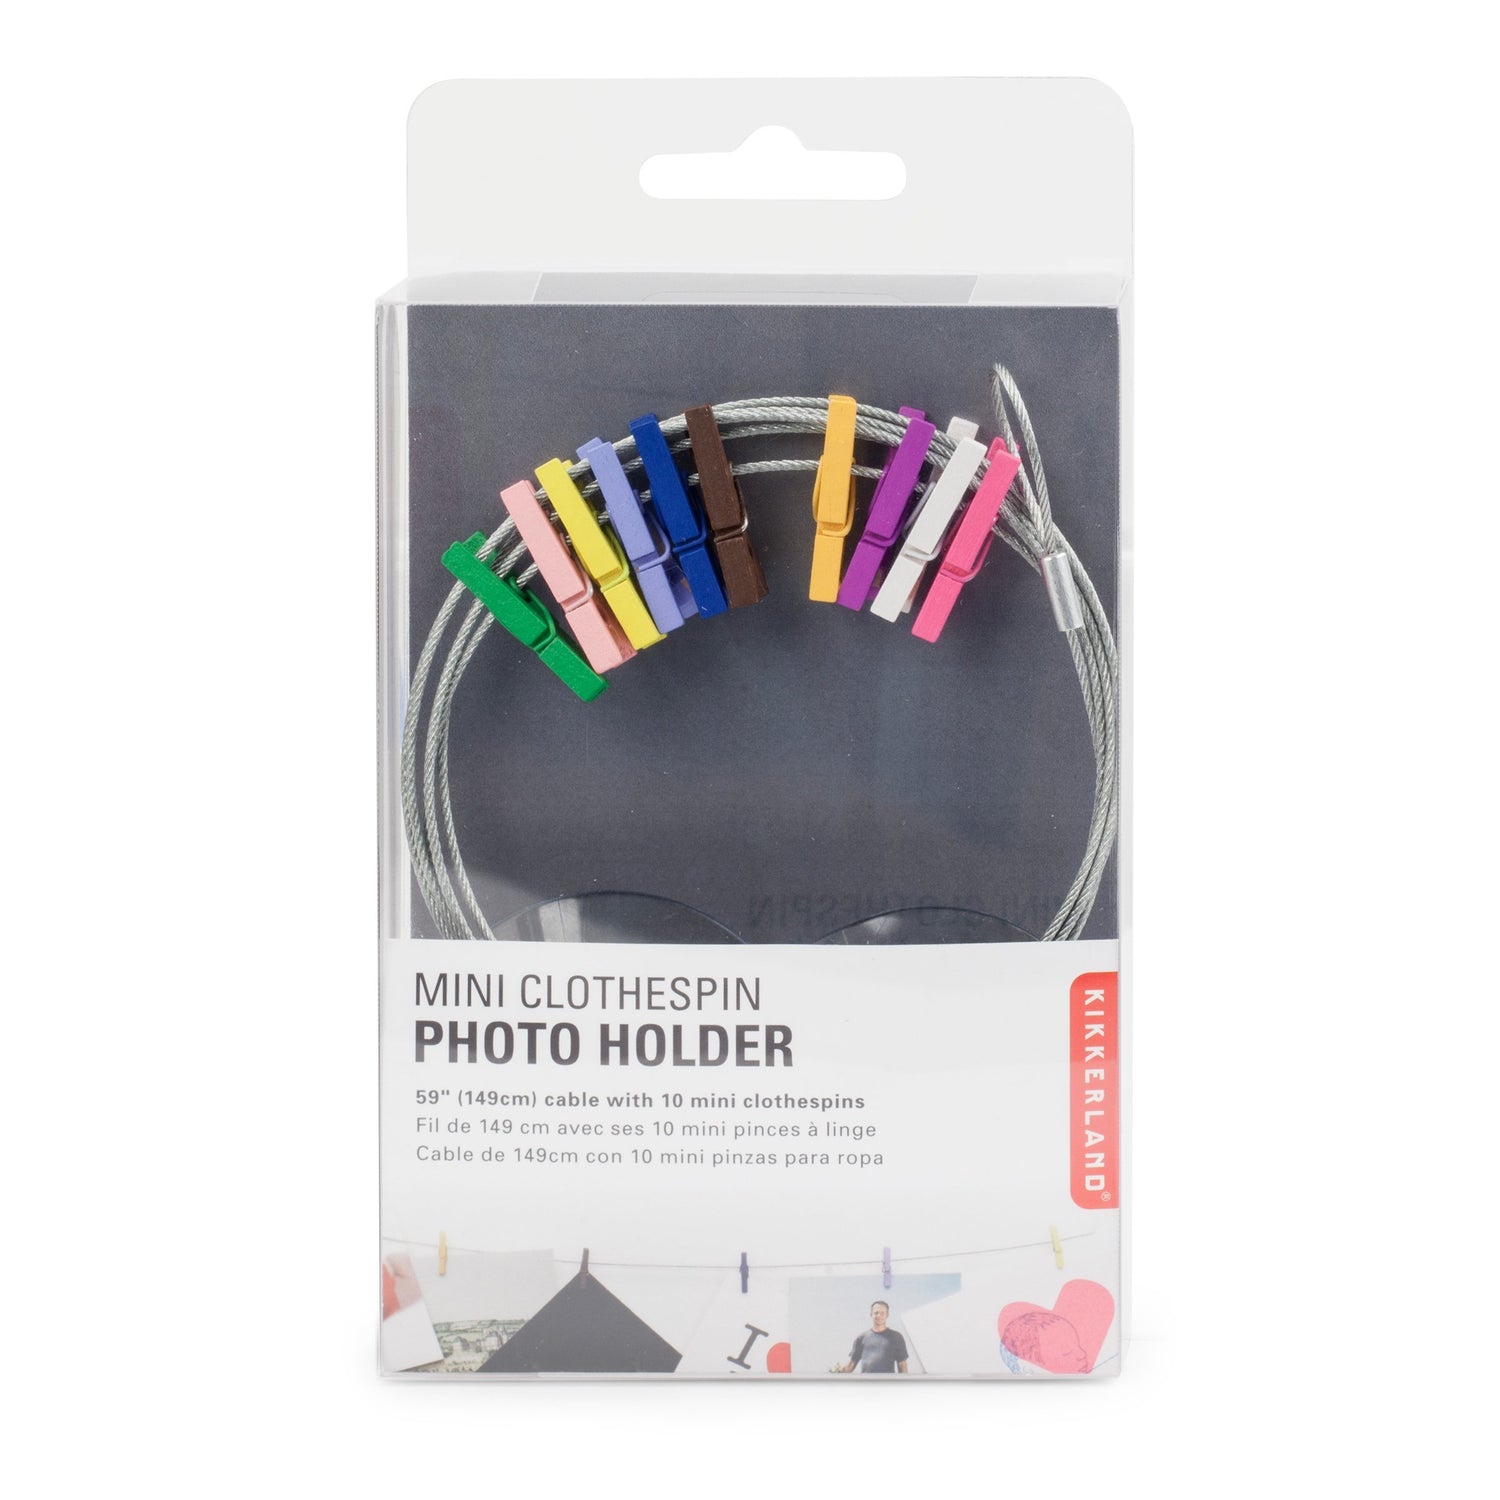 Foto del soporte de alambre con 10 mini de Clothespins multicolor